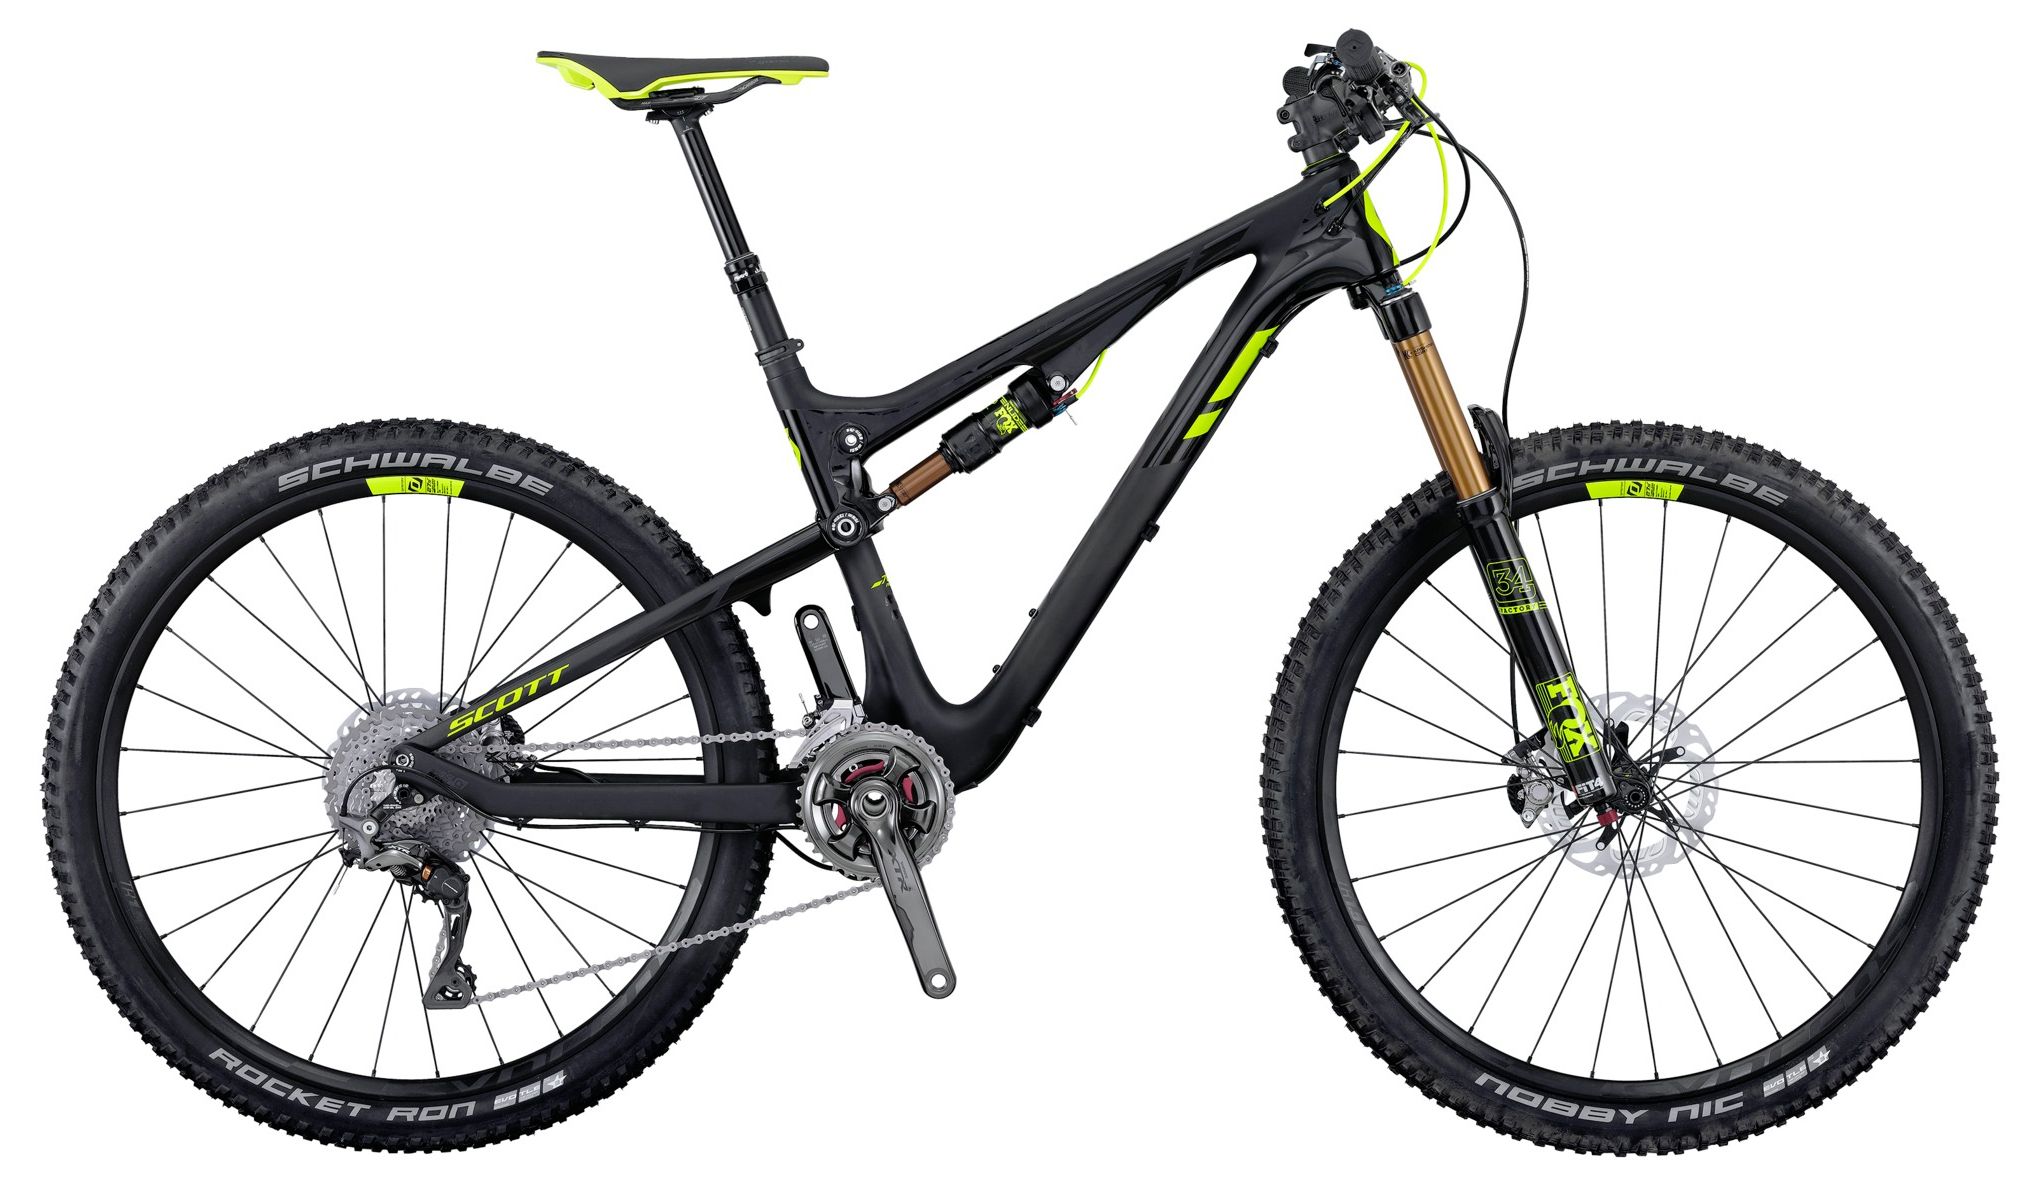  Отзывы о Двухподвесном велосипеде Scott Genius 700 Premium 2016